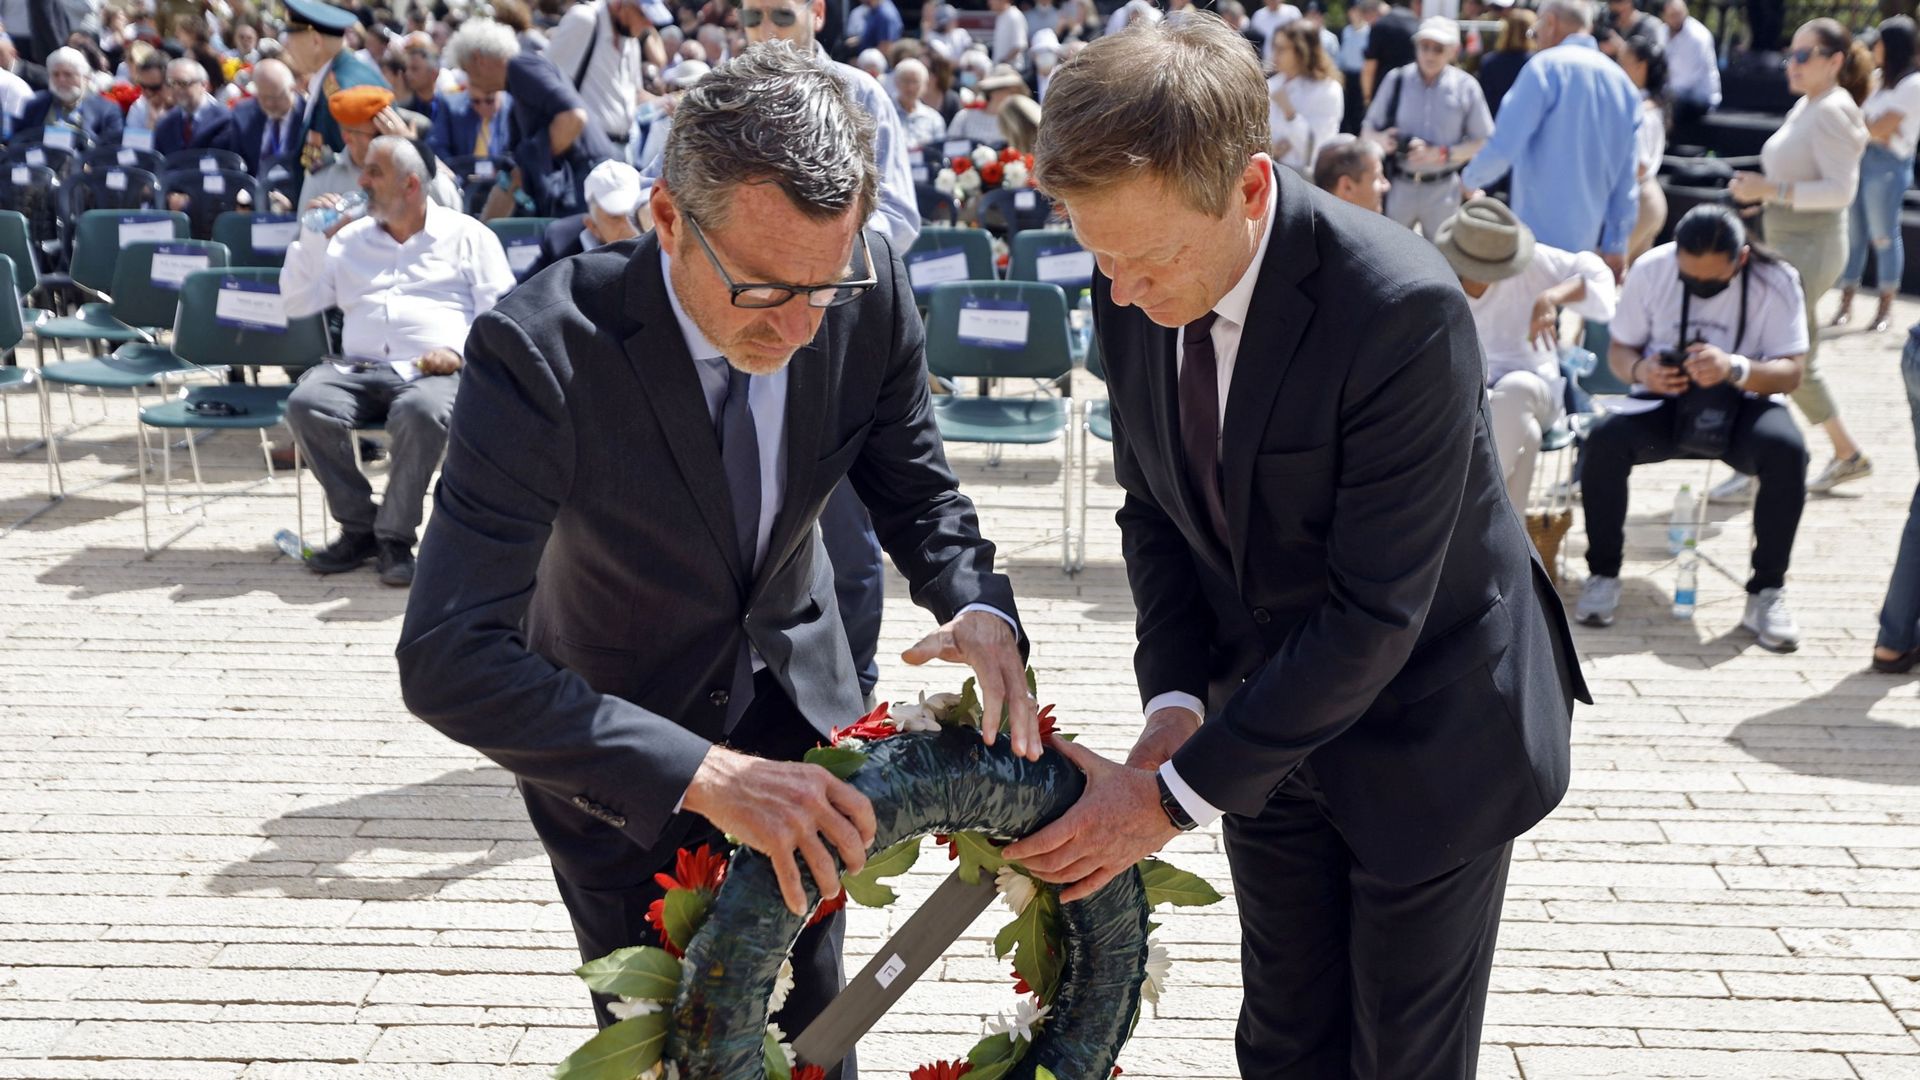 Richard Lutz, PDG de la Deutsche Bahn, et le journaliste allemand Kai Diekmann rendent hommage lors d’une cérémonie de dépôt de gerbe marquant la journée de commémoration de l’Holocauste.